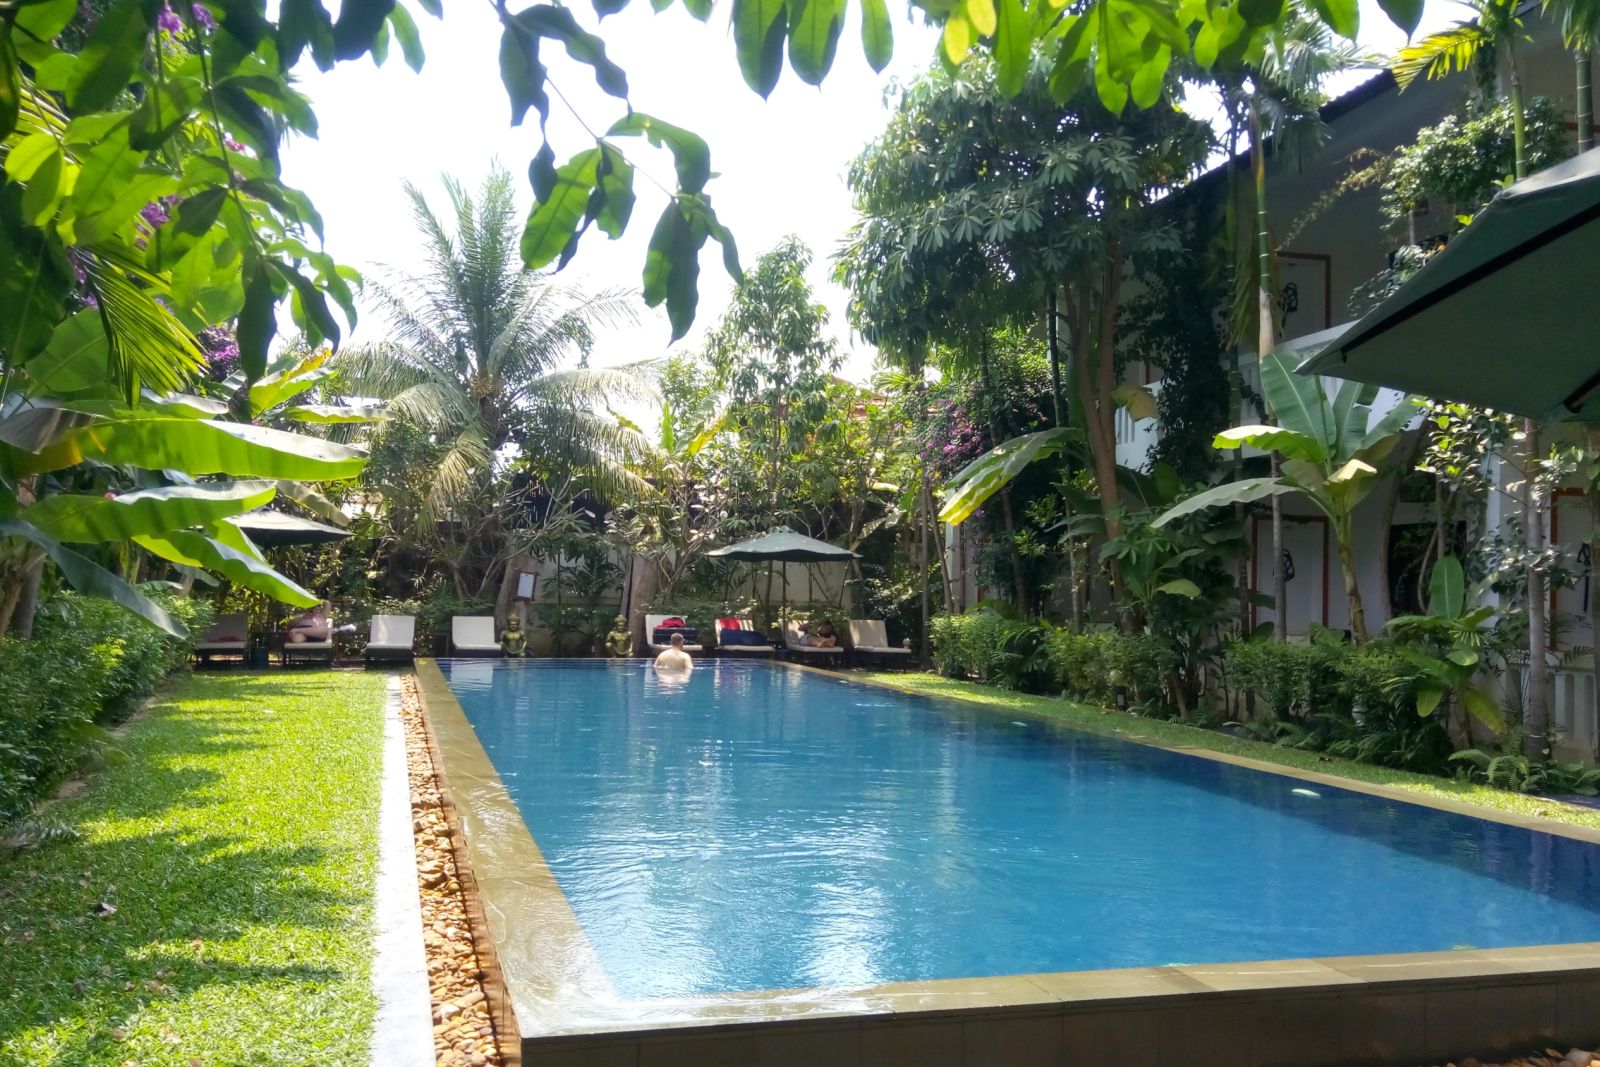 Schönes Hotel mit Pool zum Entspannen nach aktiven Tagen